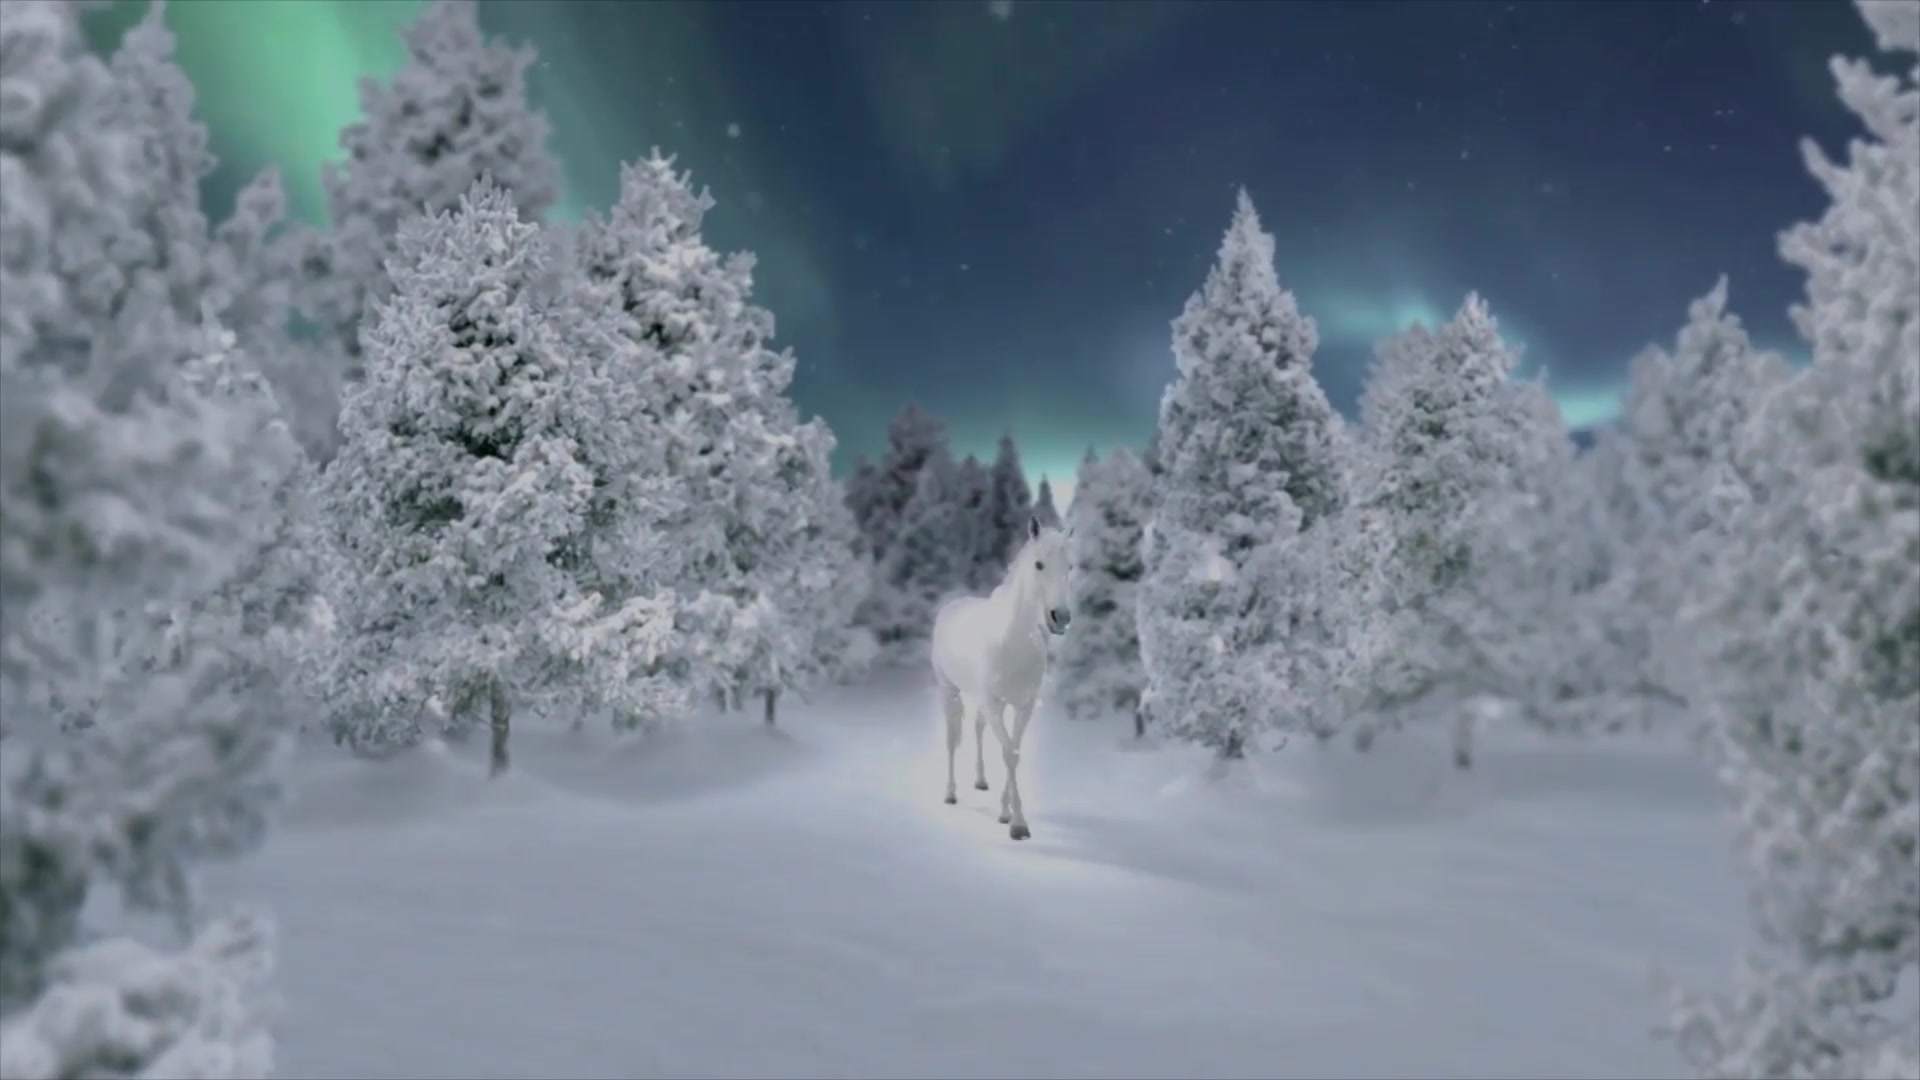 Magic Snow Elements | Premiere Pro MOGRT Videohive 29656735 Premiere Pro Image 4